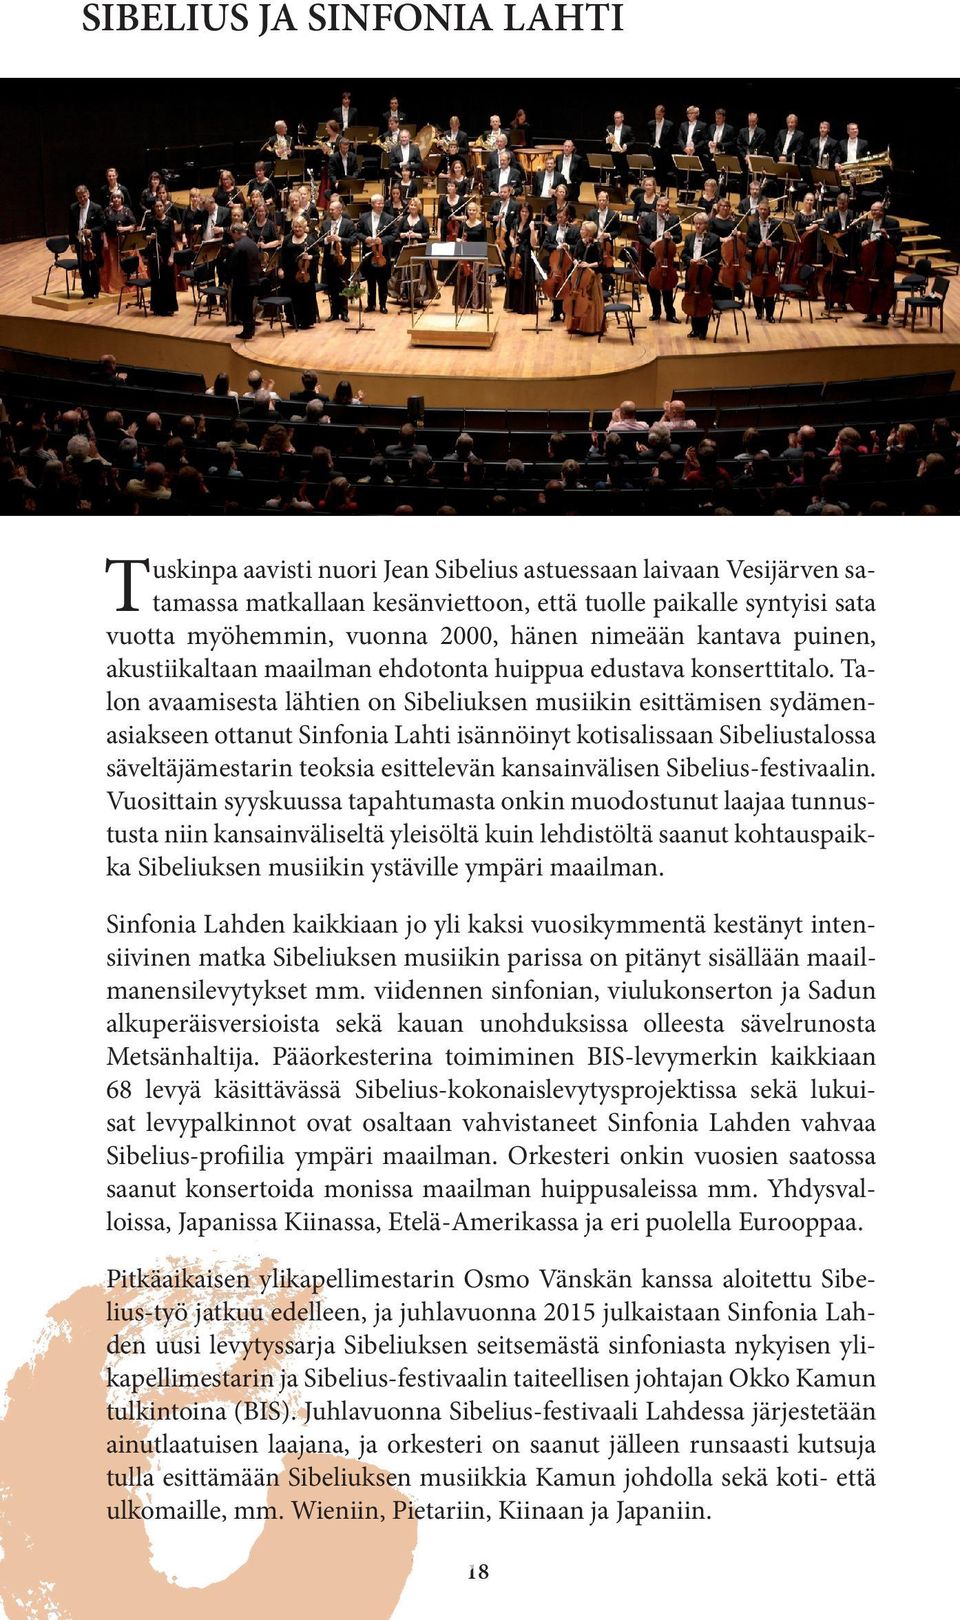 Talon avaamisesta lähtien on Sibeliuksen musiikin esittämisen sydämenasiakseen ottanut Sinfonia Lahti isännöinyt kotisalissaan Sibeliustalossa säveltäjämestarin teoksia esittelevän kansainvälisen